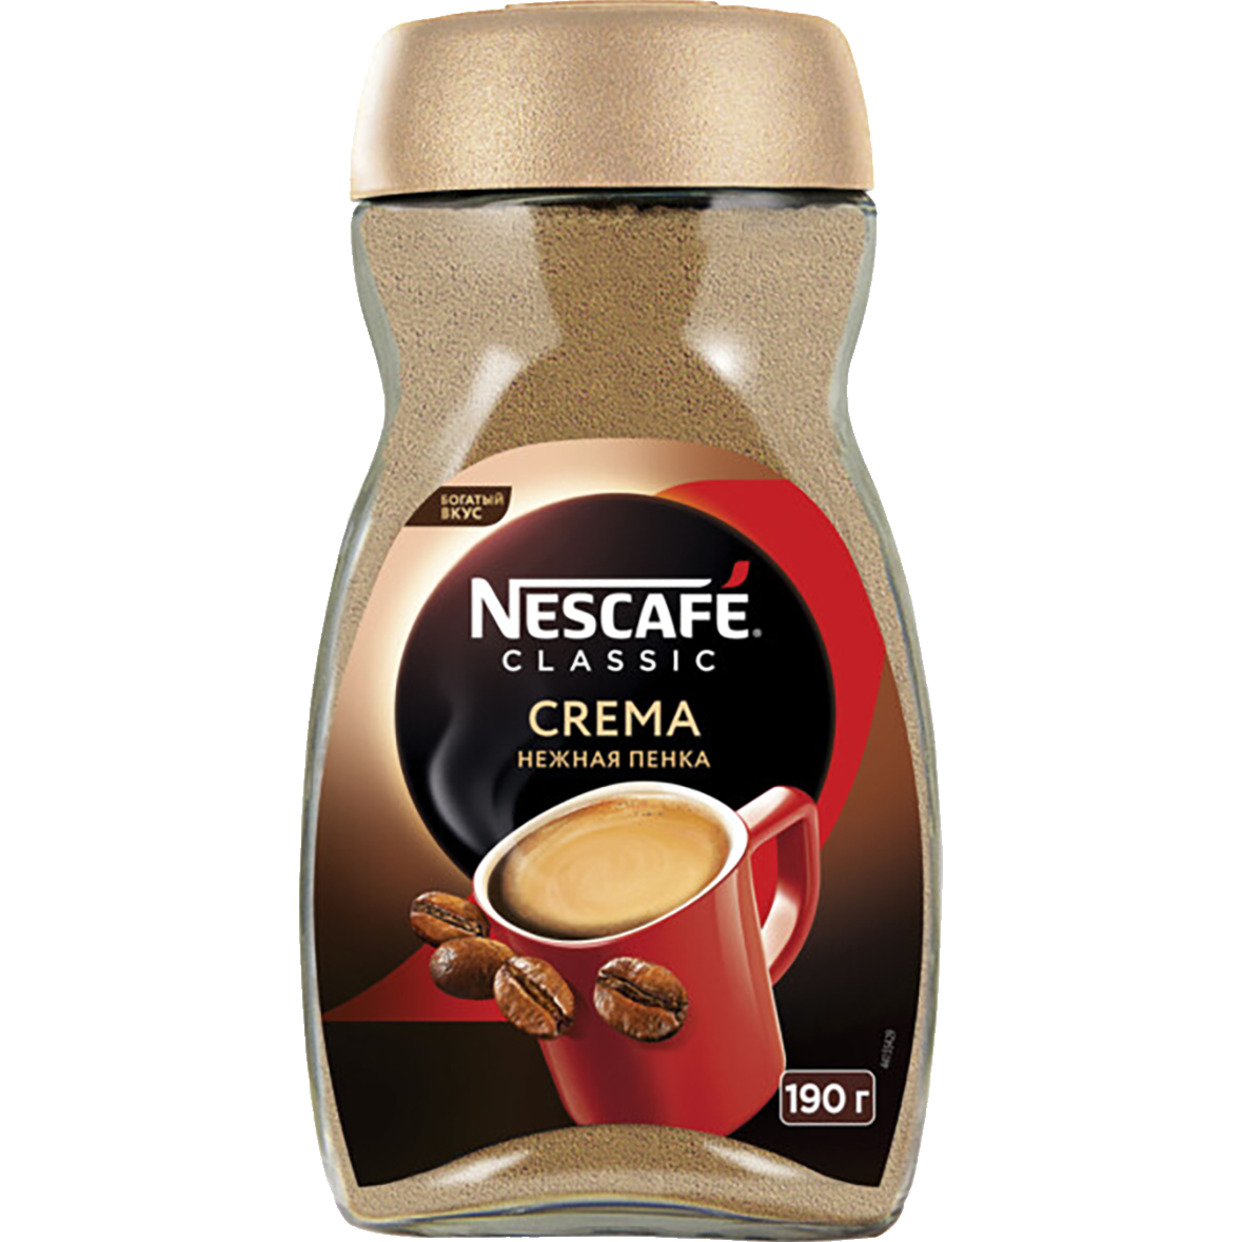 NESCAFE Classic Crema. 100% натуральный растворимый порошкообразный кофе, 190г по акции в Пятерочке